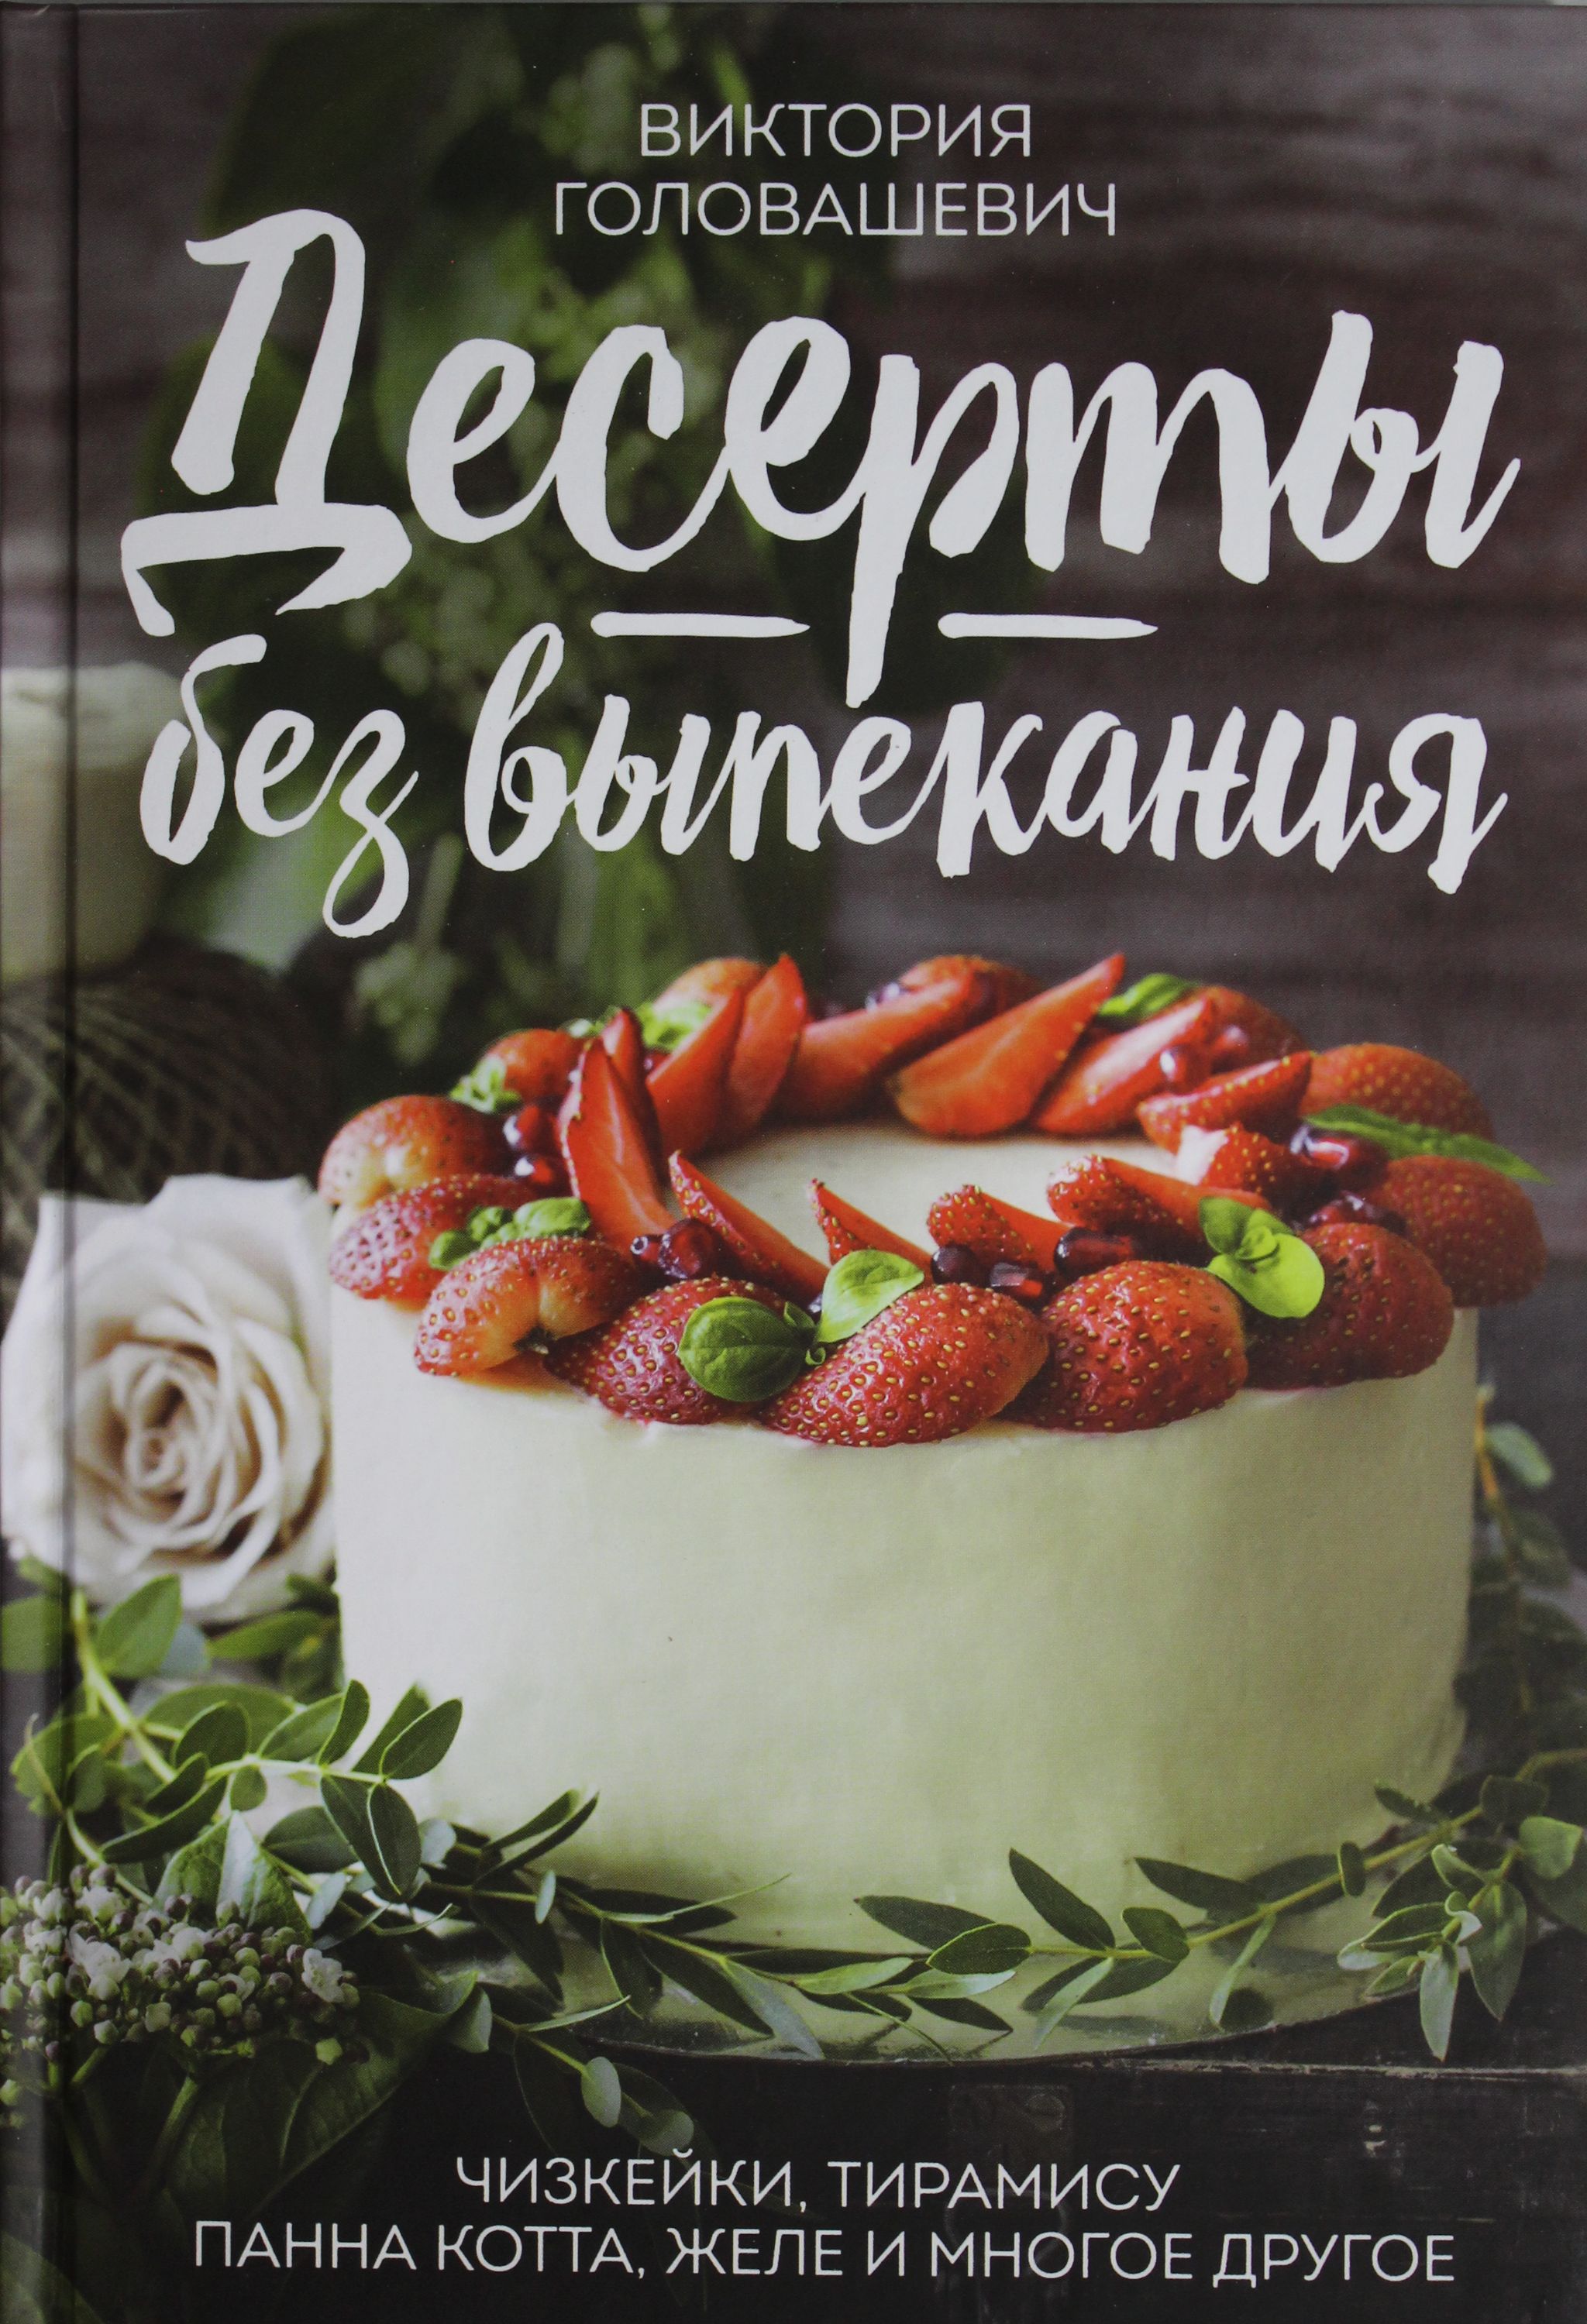 Рецепты десертов книги. Книга "Десерты". Книга со сладостями. Книги по десертам. Картинка Десерты для кулинарной книги.